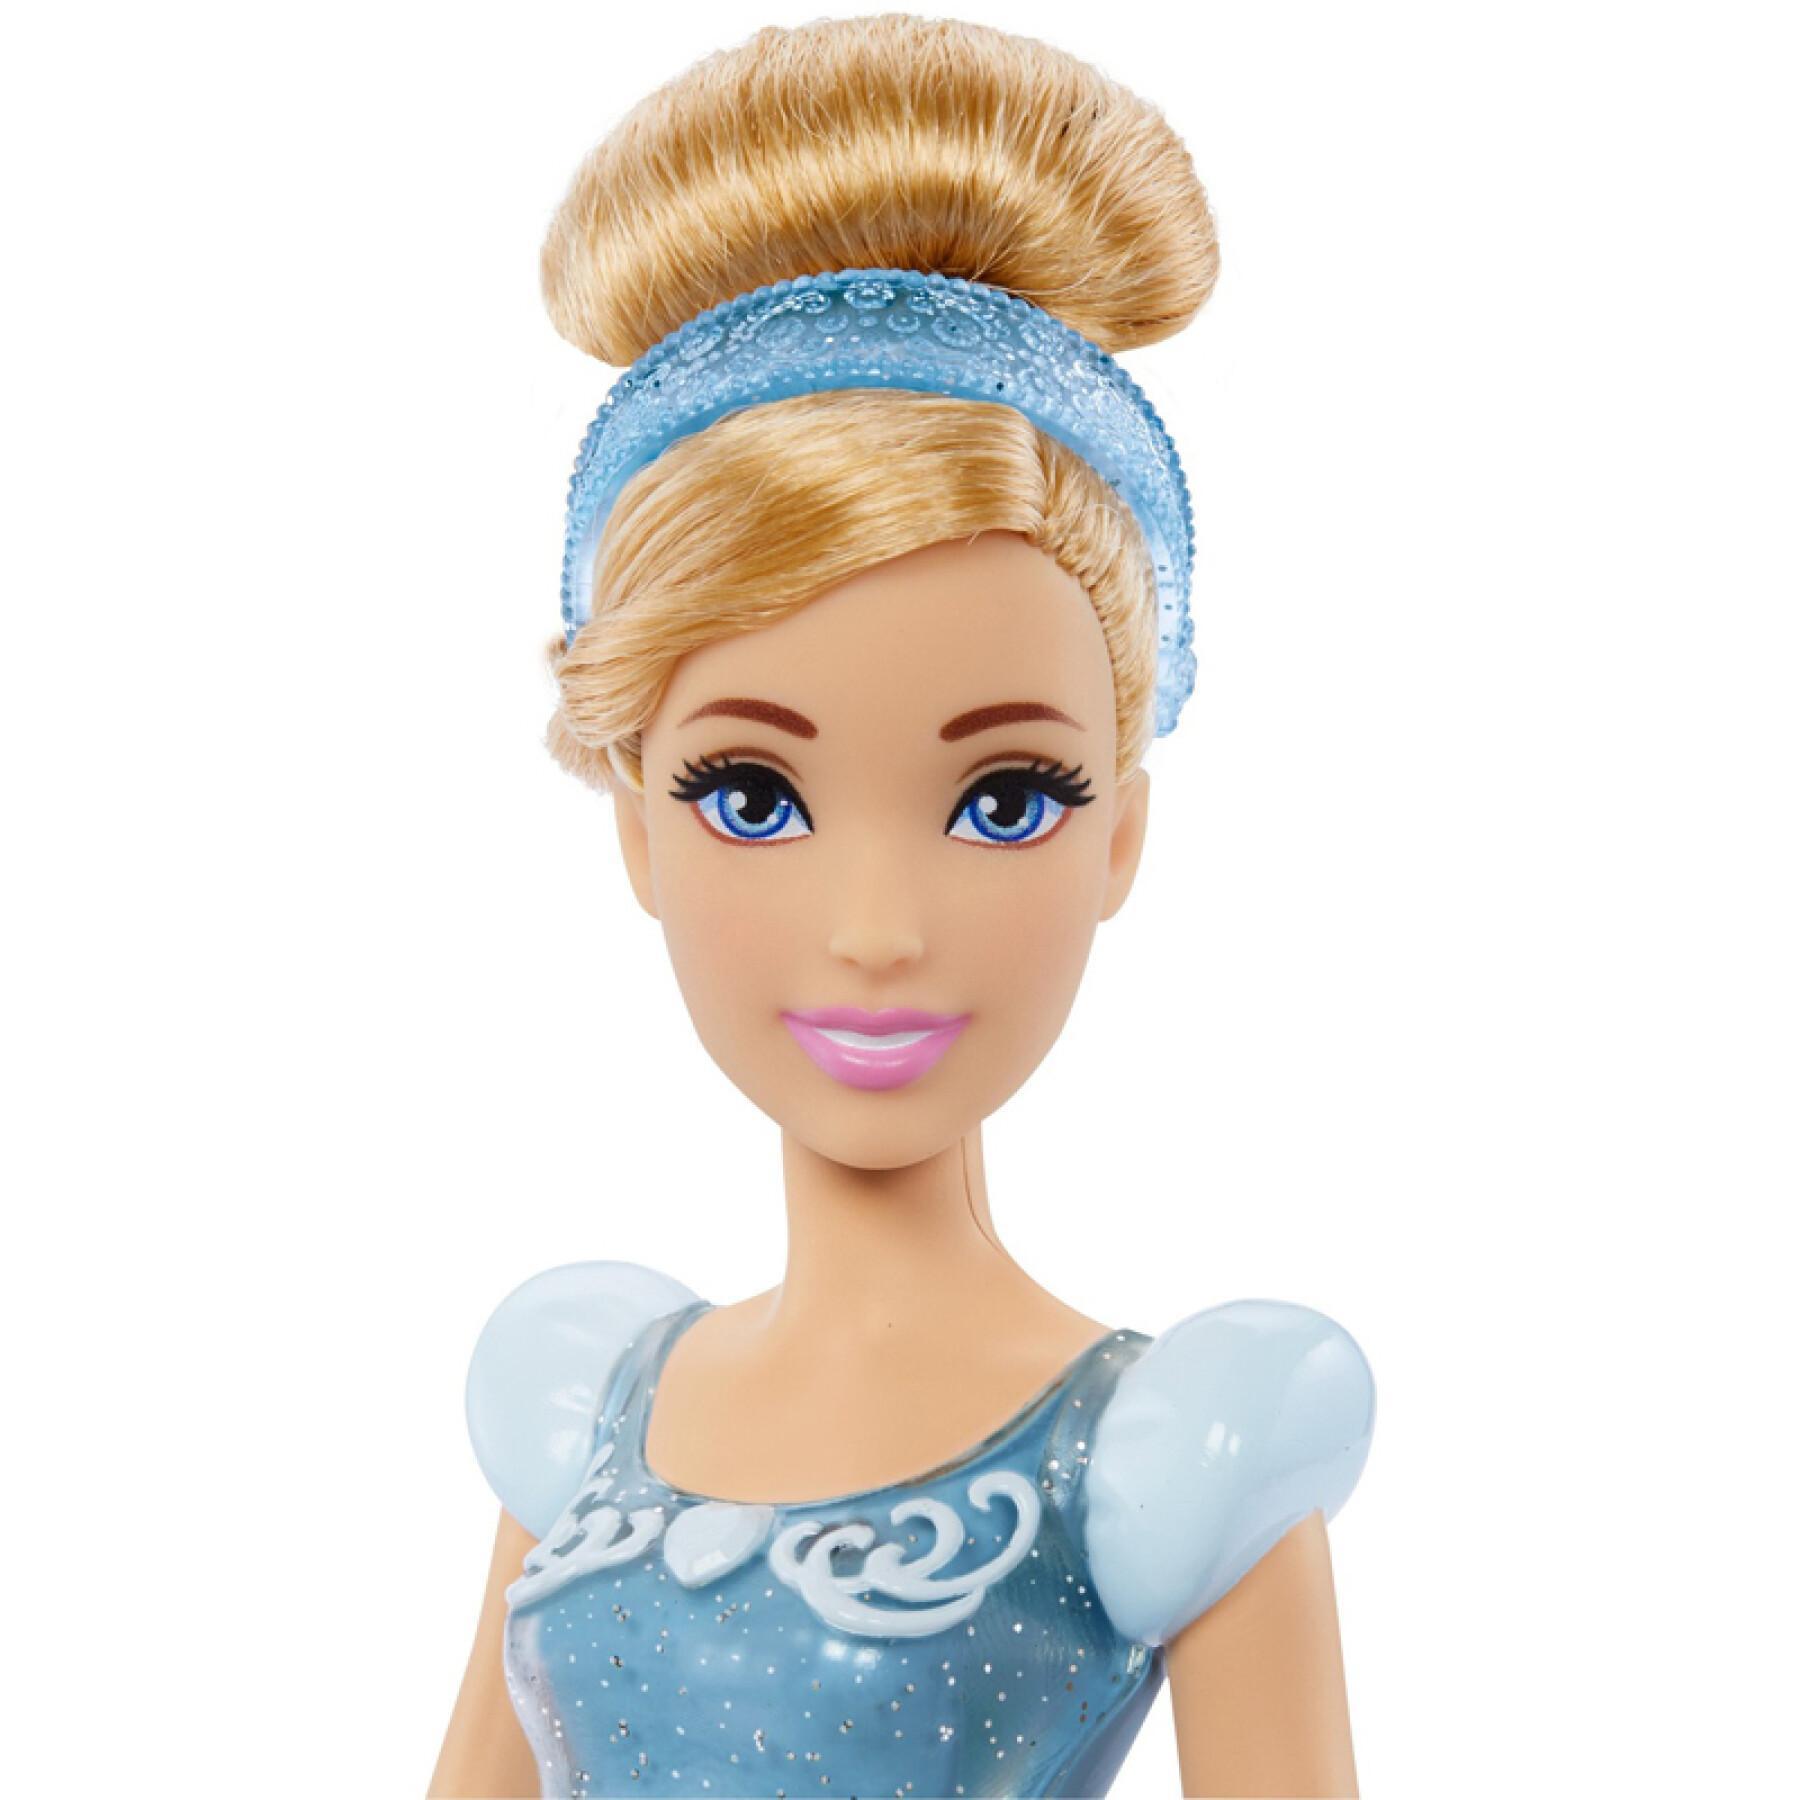 Assepoester Prinses Pop Mattel Frankrijk